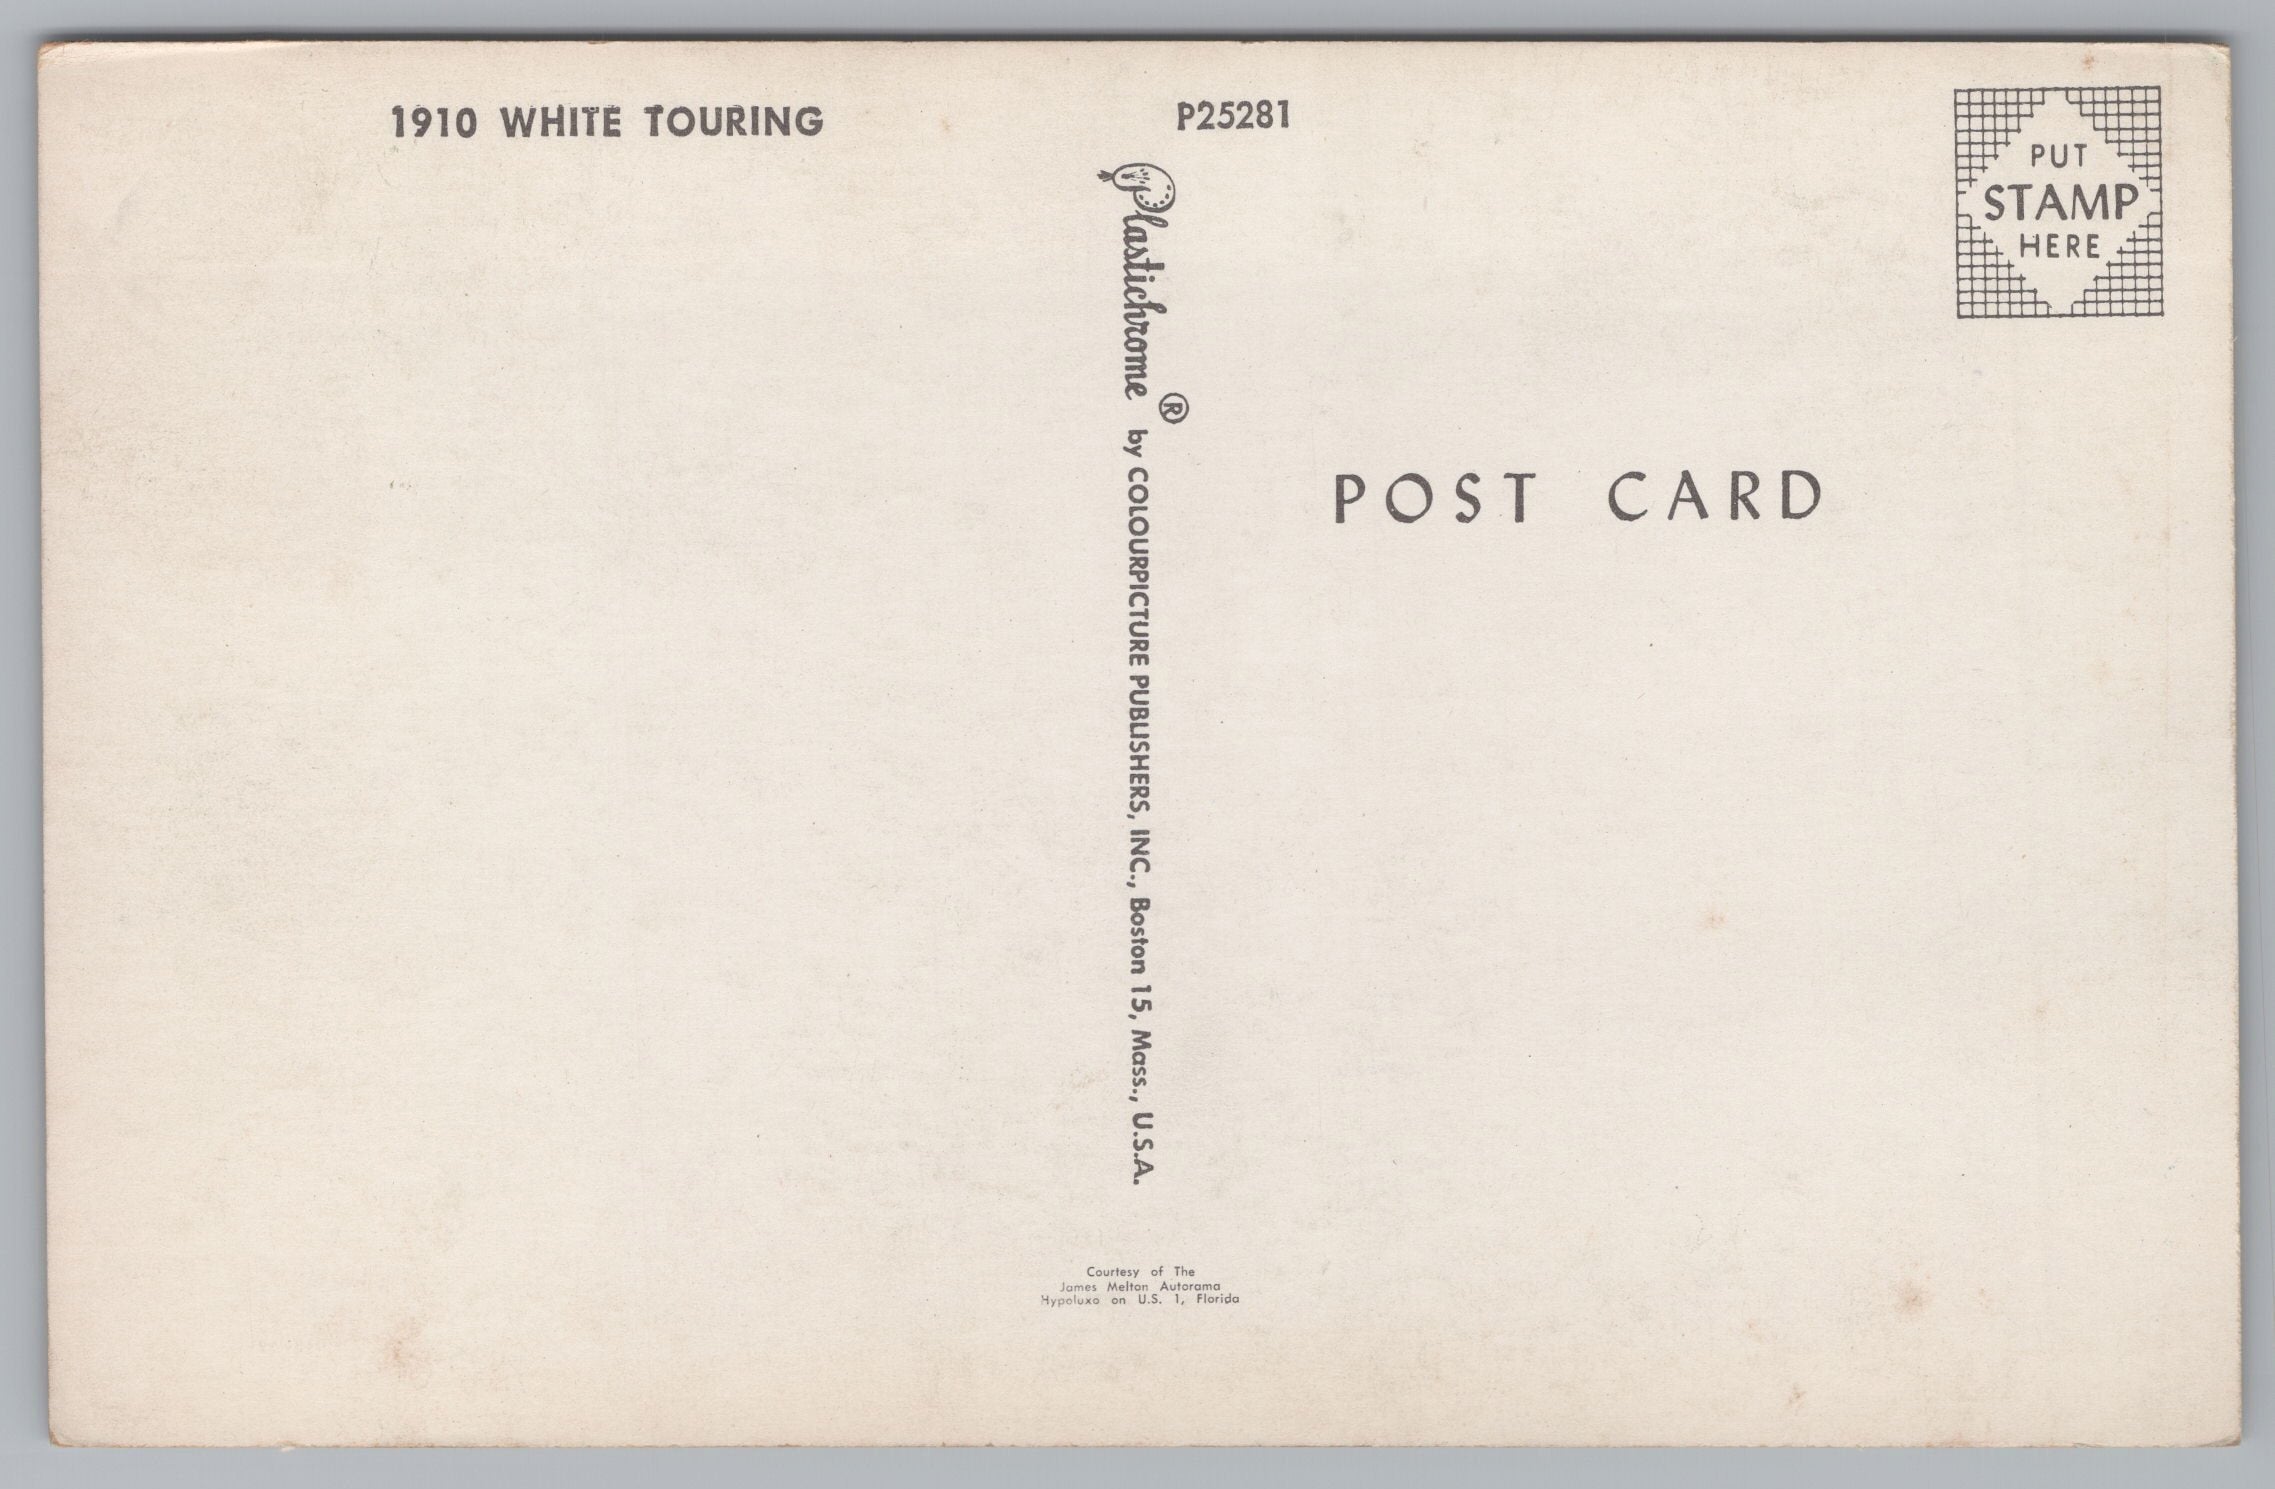 Fishing Humor,  R. Seale Vintage Post Card.